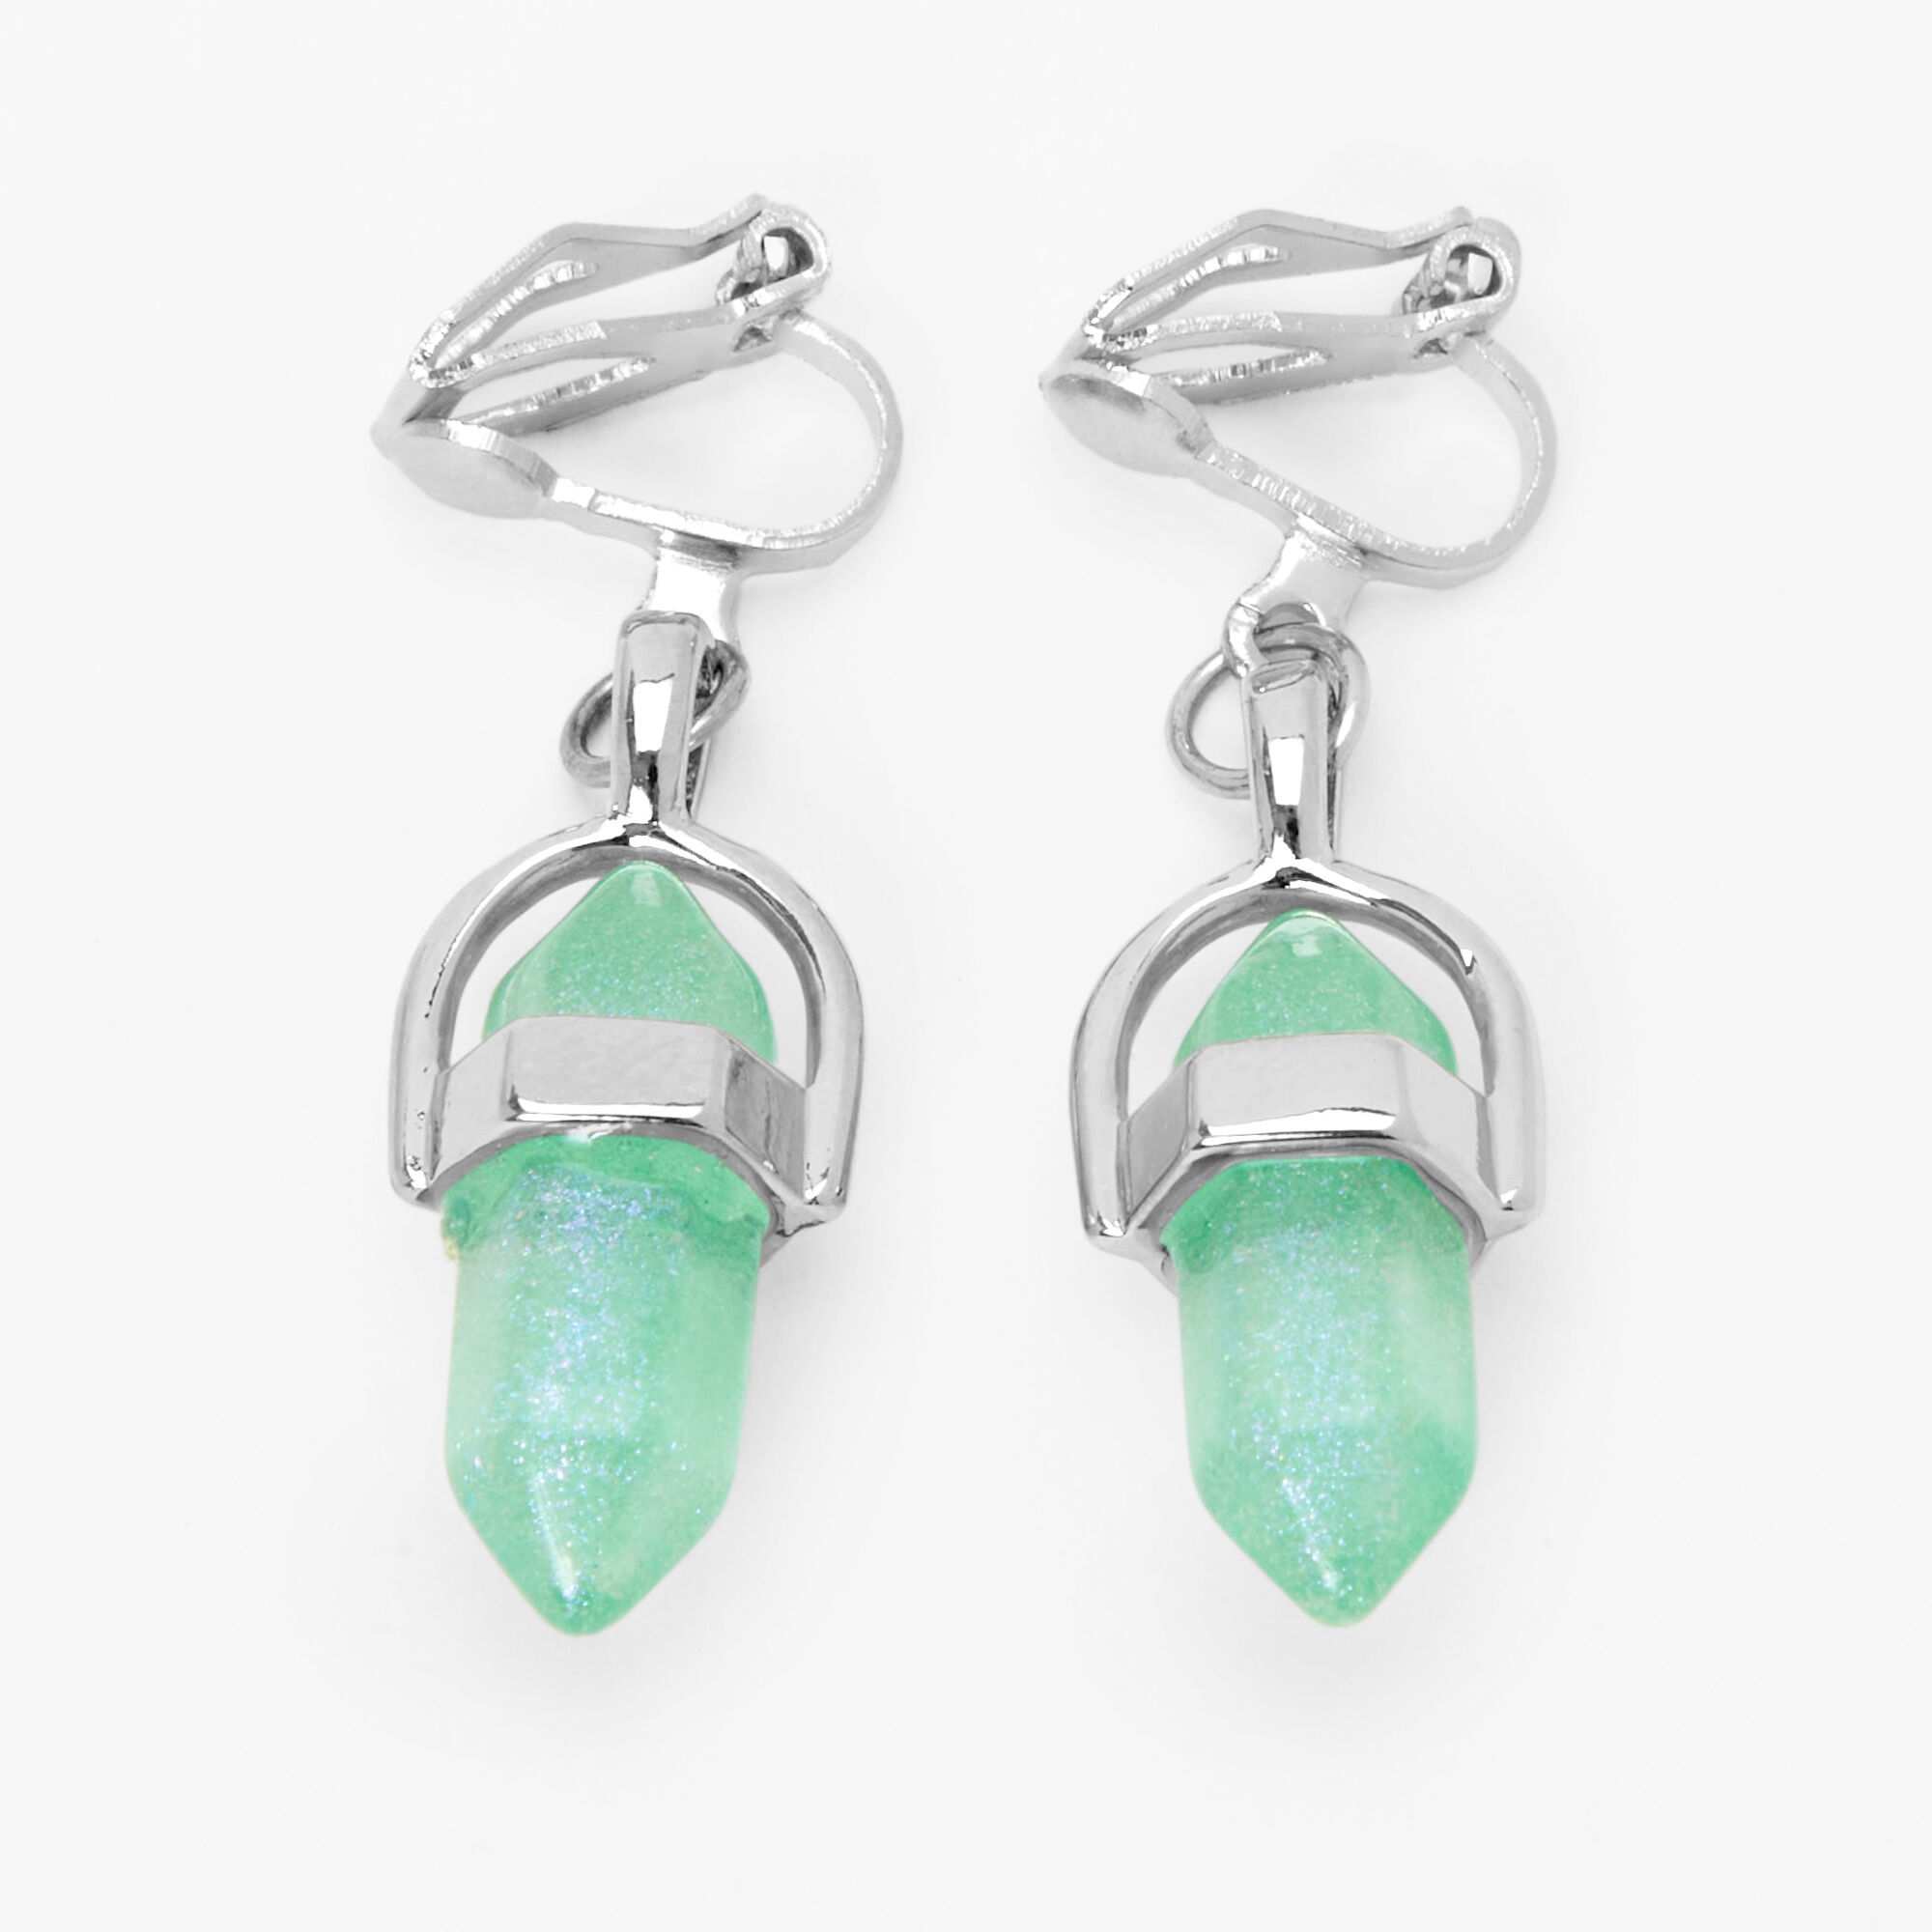 Gemstone silver tone frame drop earrings